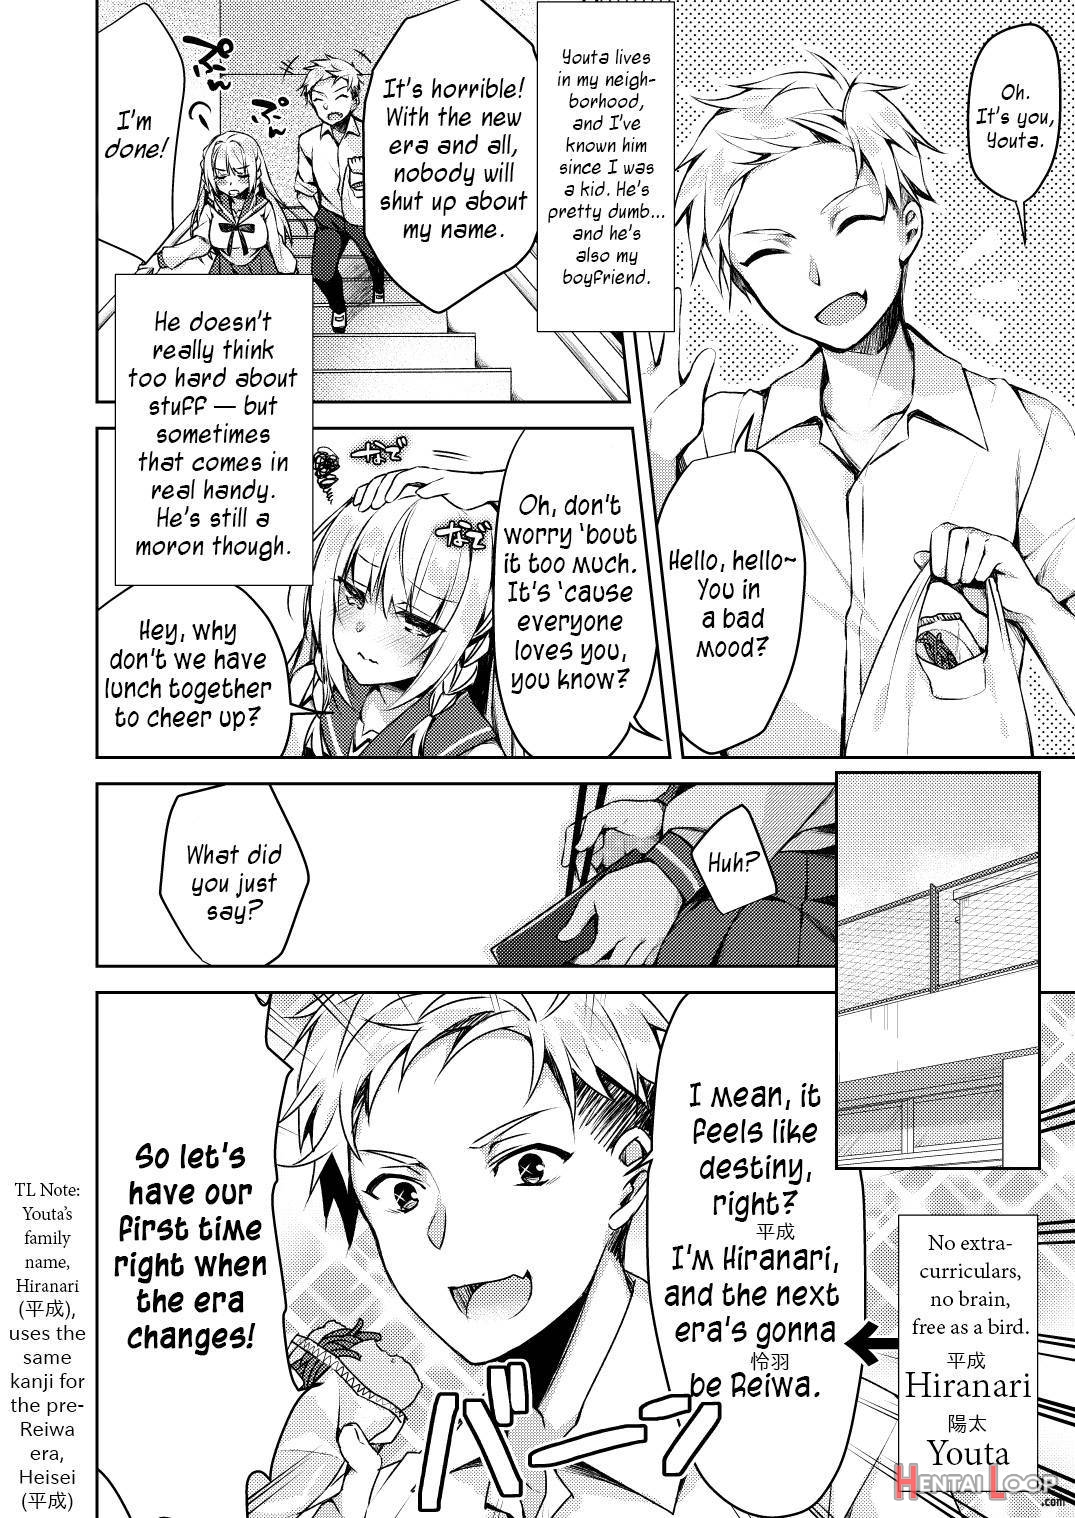 Kaigen ♥ Sex Reiwa-chan page 4